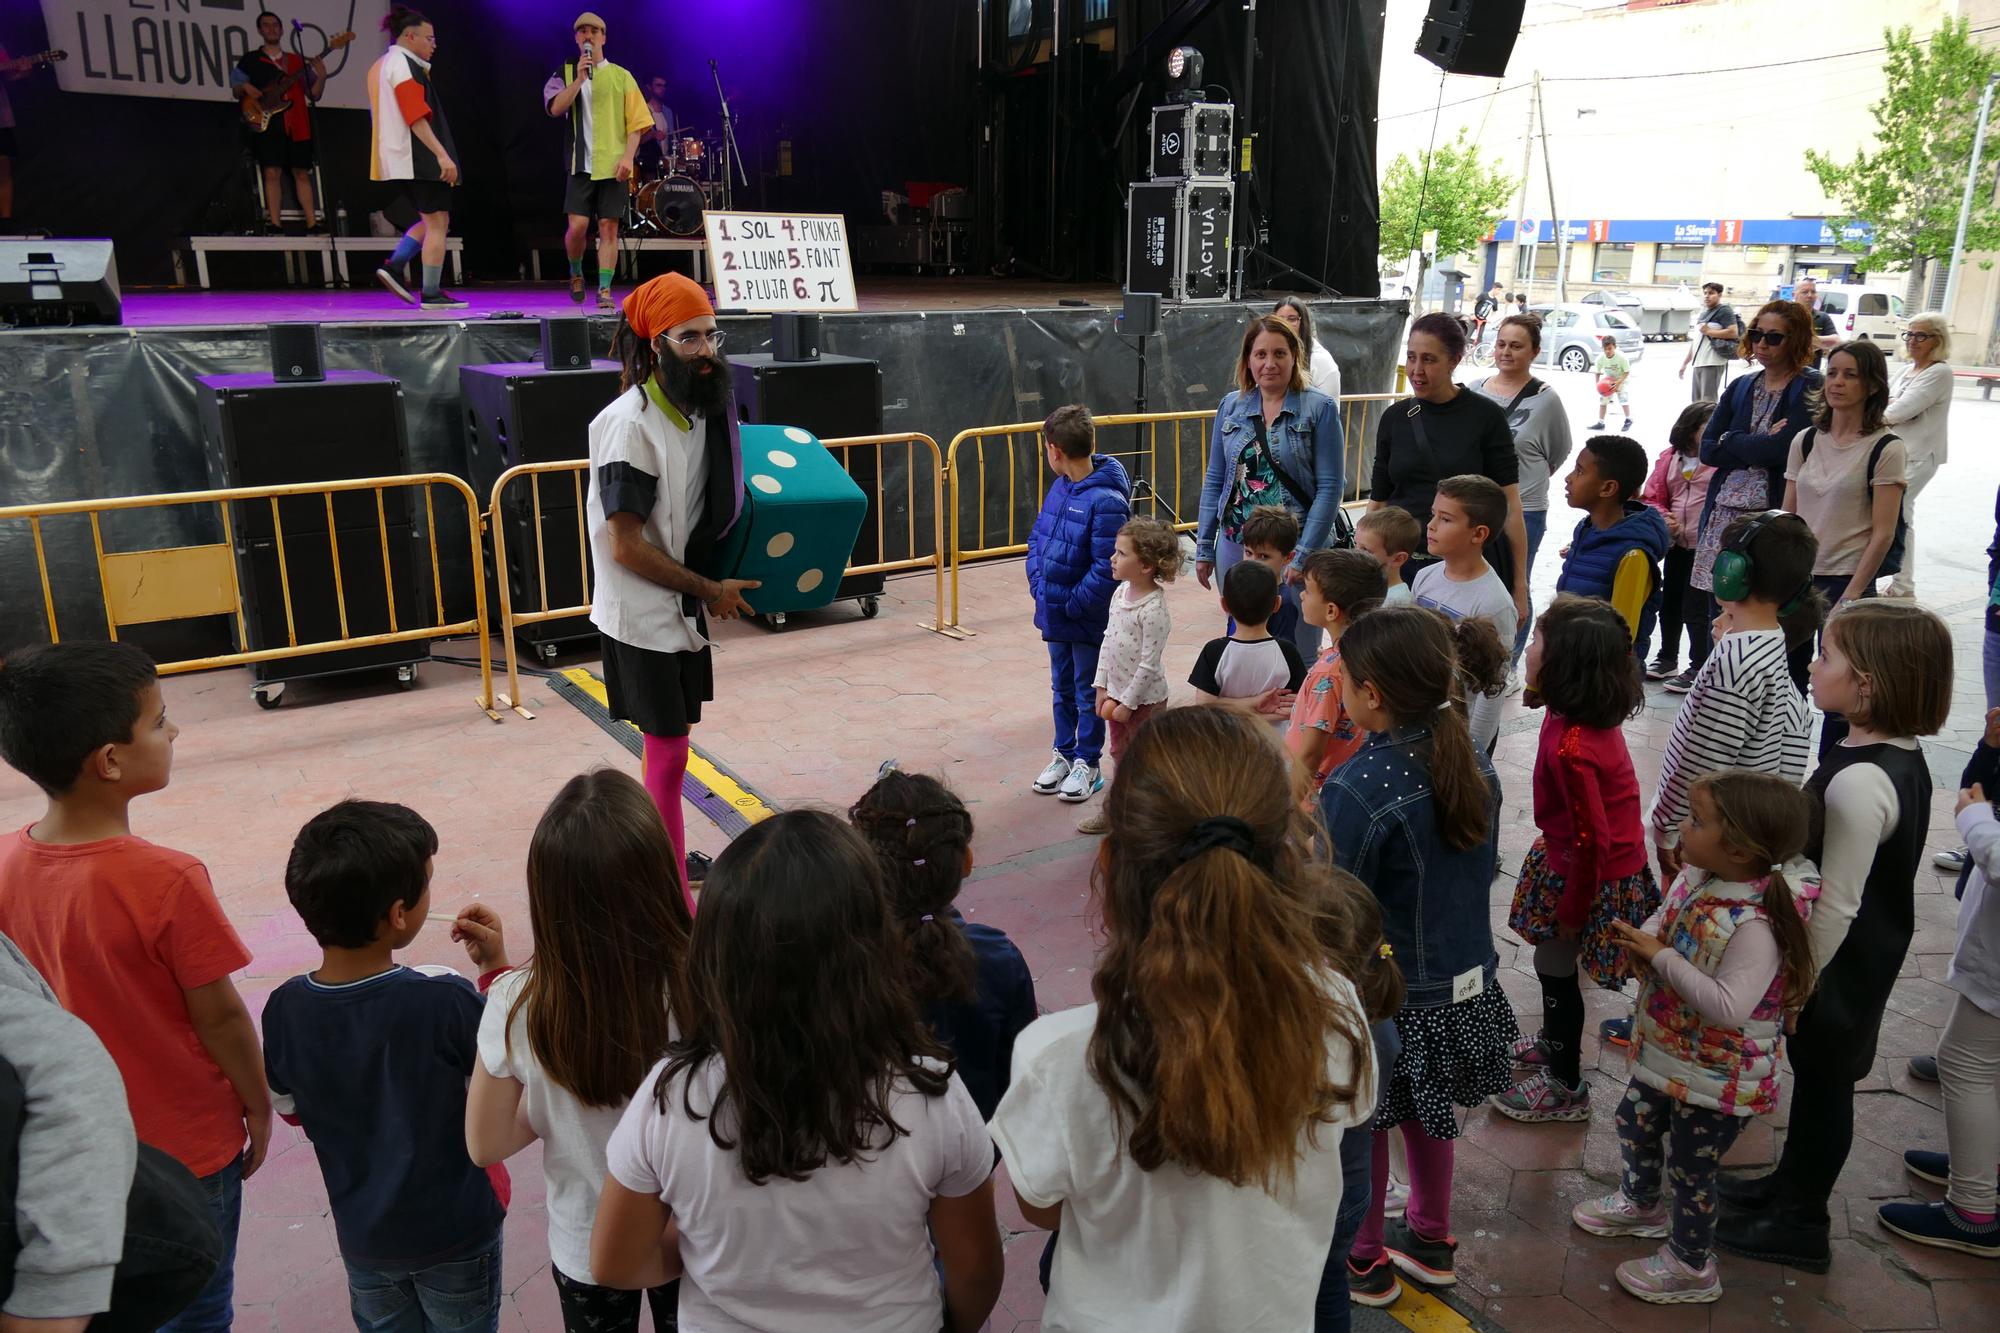 El grup Sardines en Llauna anima la mainada a Figueres